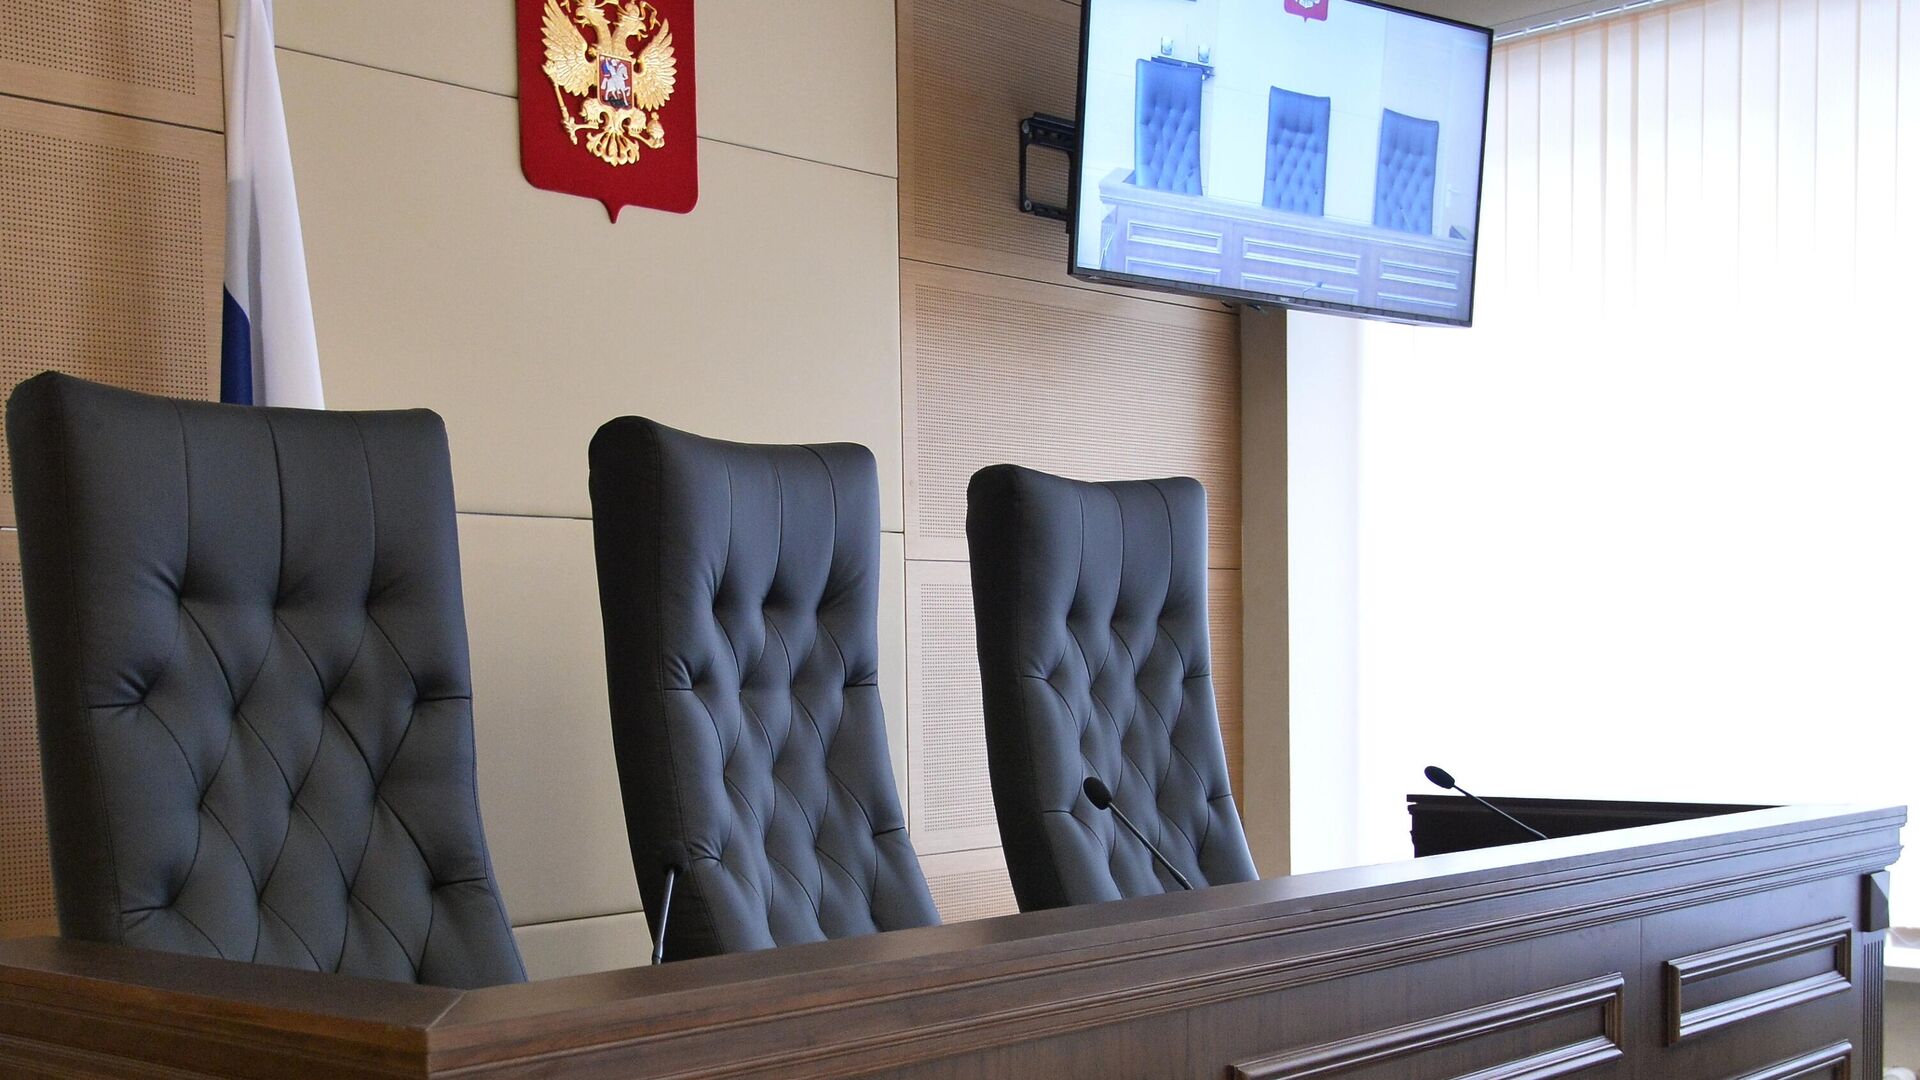 Кресла для судей в зале заседаний - РИА Новости, 1920, 02.08.2021